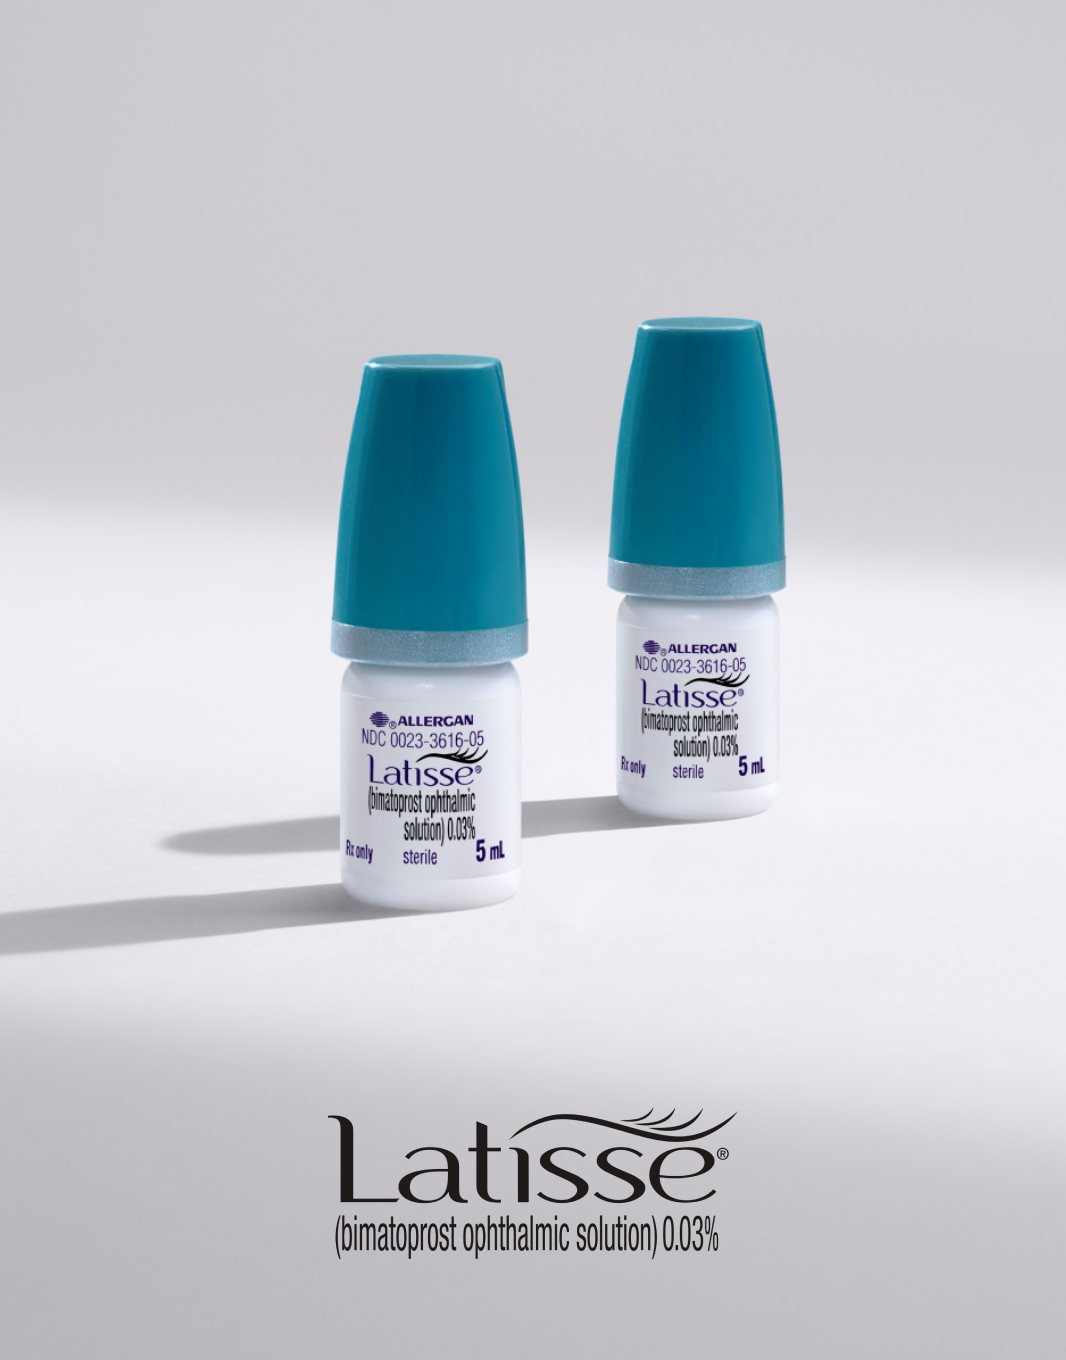 Latisse skincare products